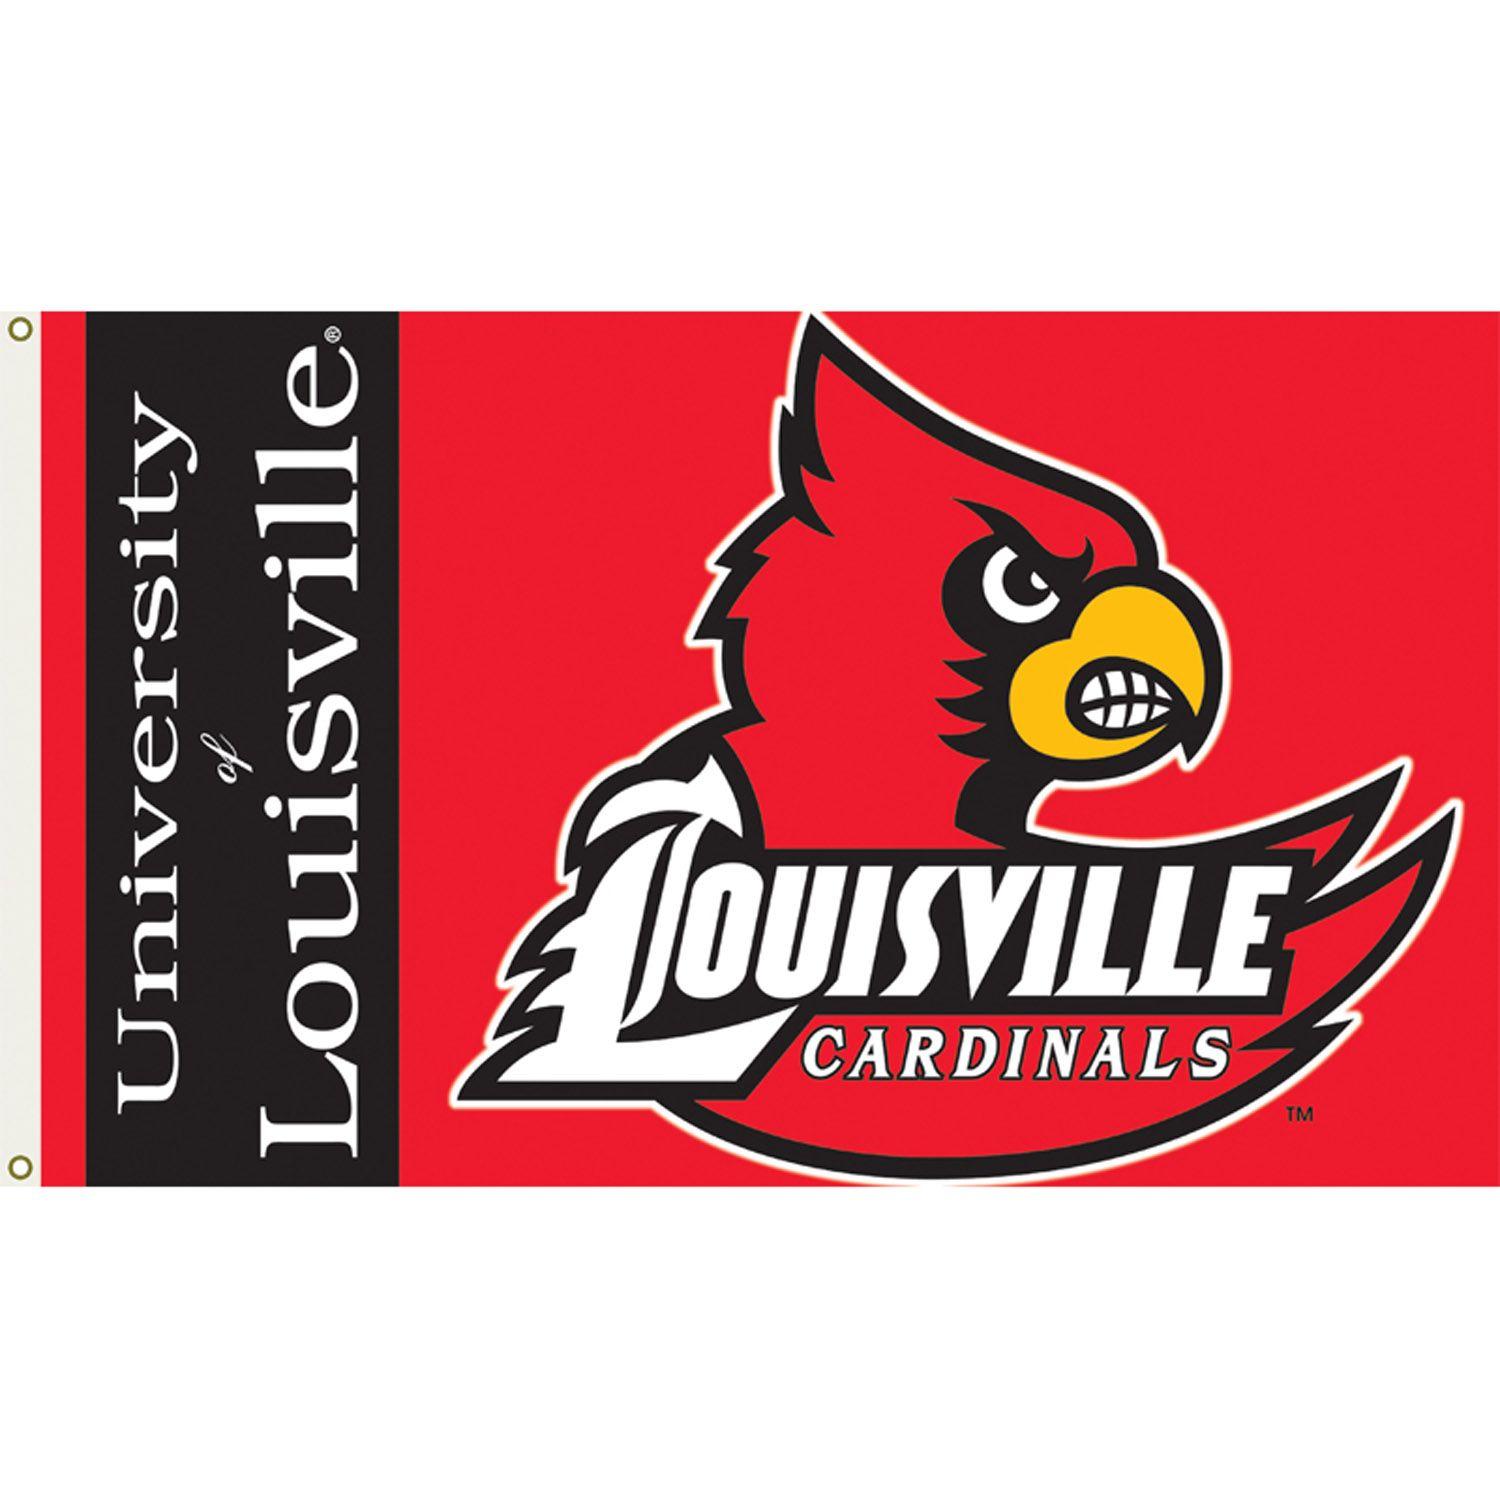 University of Louisville Cardinals Logo - Louisville Cardinals 3ft x 5ft Team Flag - Logo Design